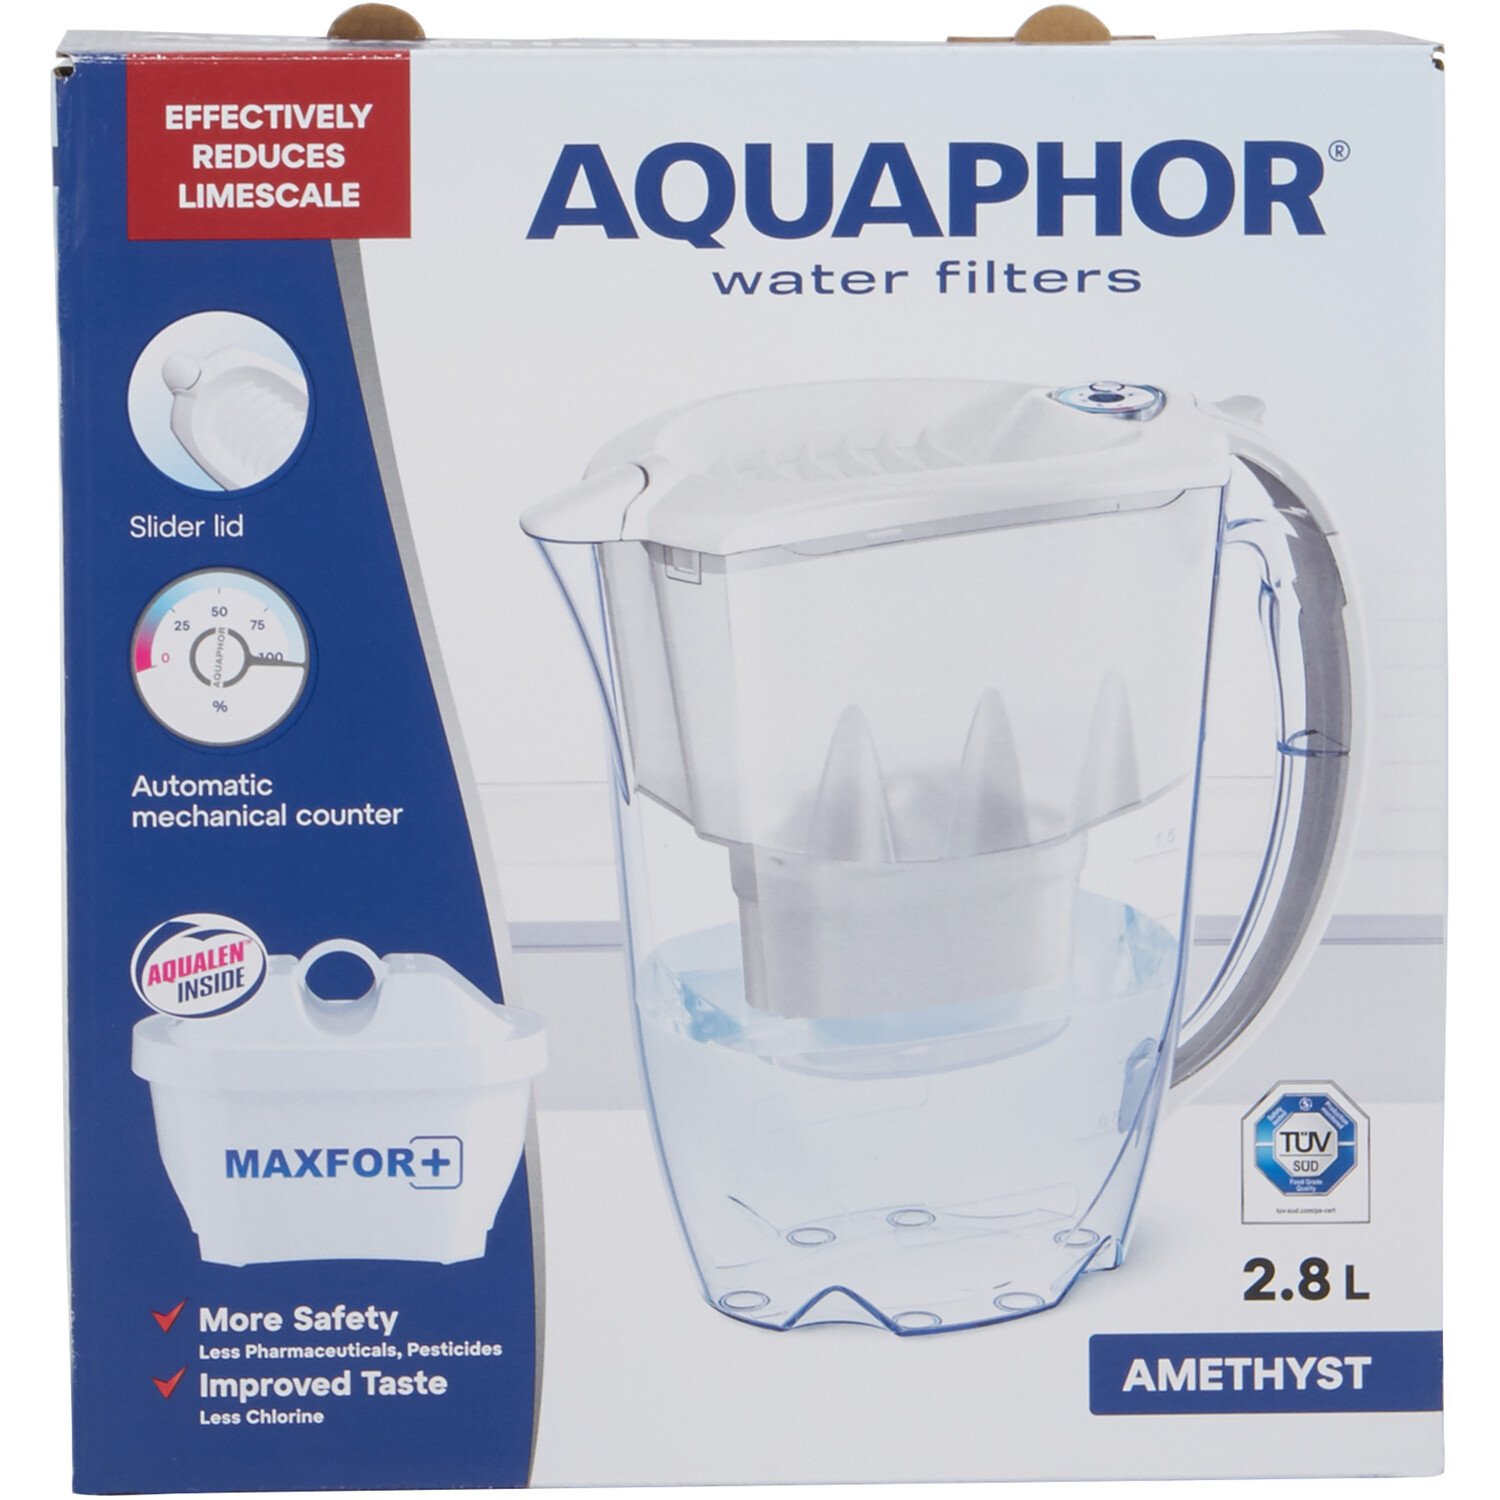 Aquaphor Amethyst 2.8l Water Filter Jug - White Image 1